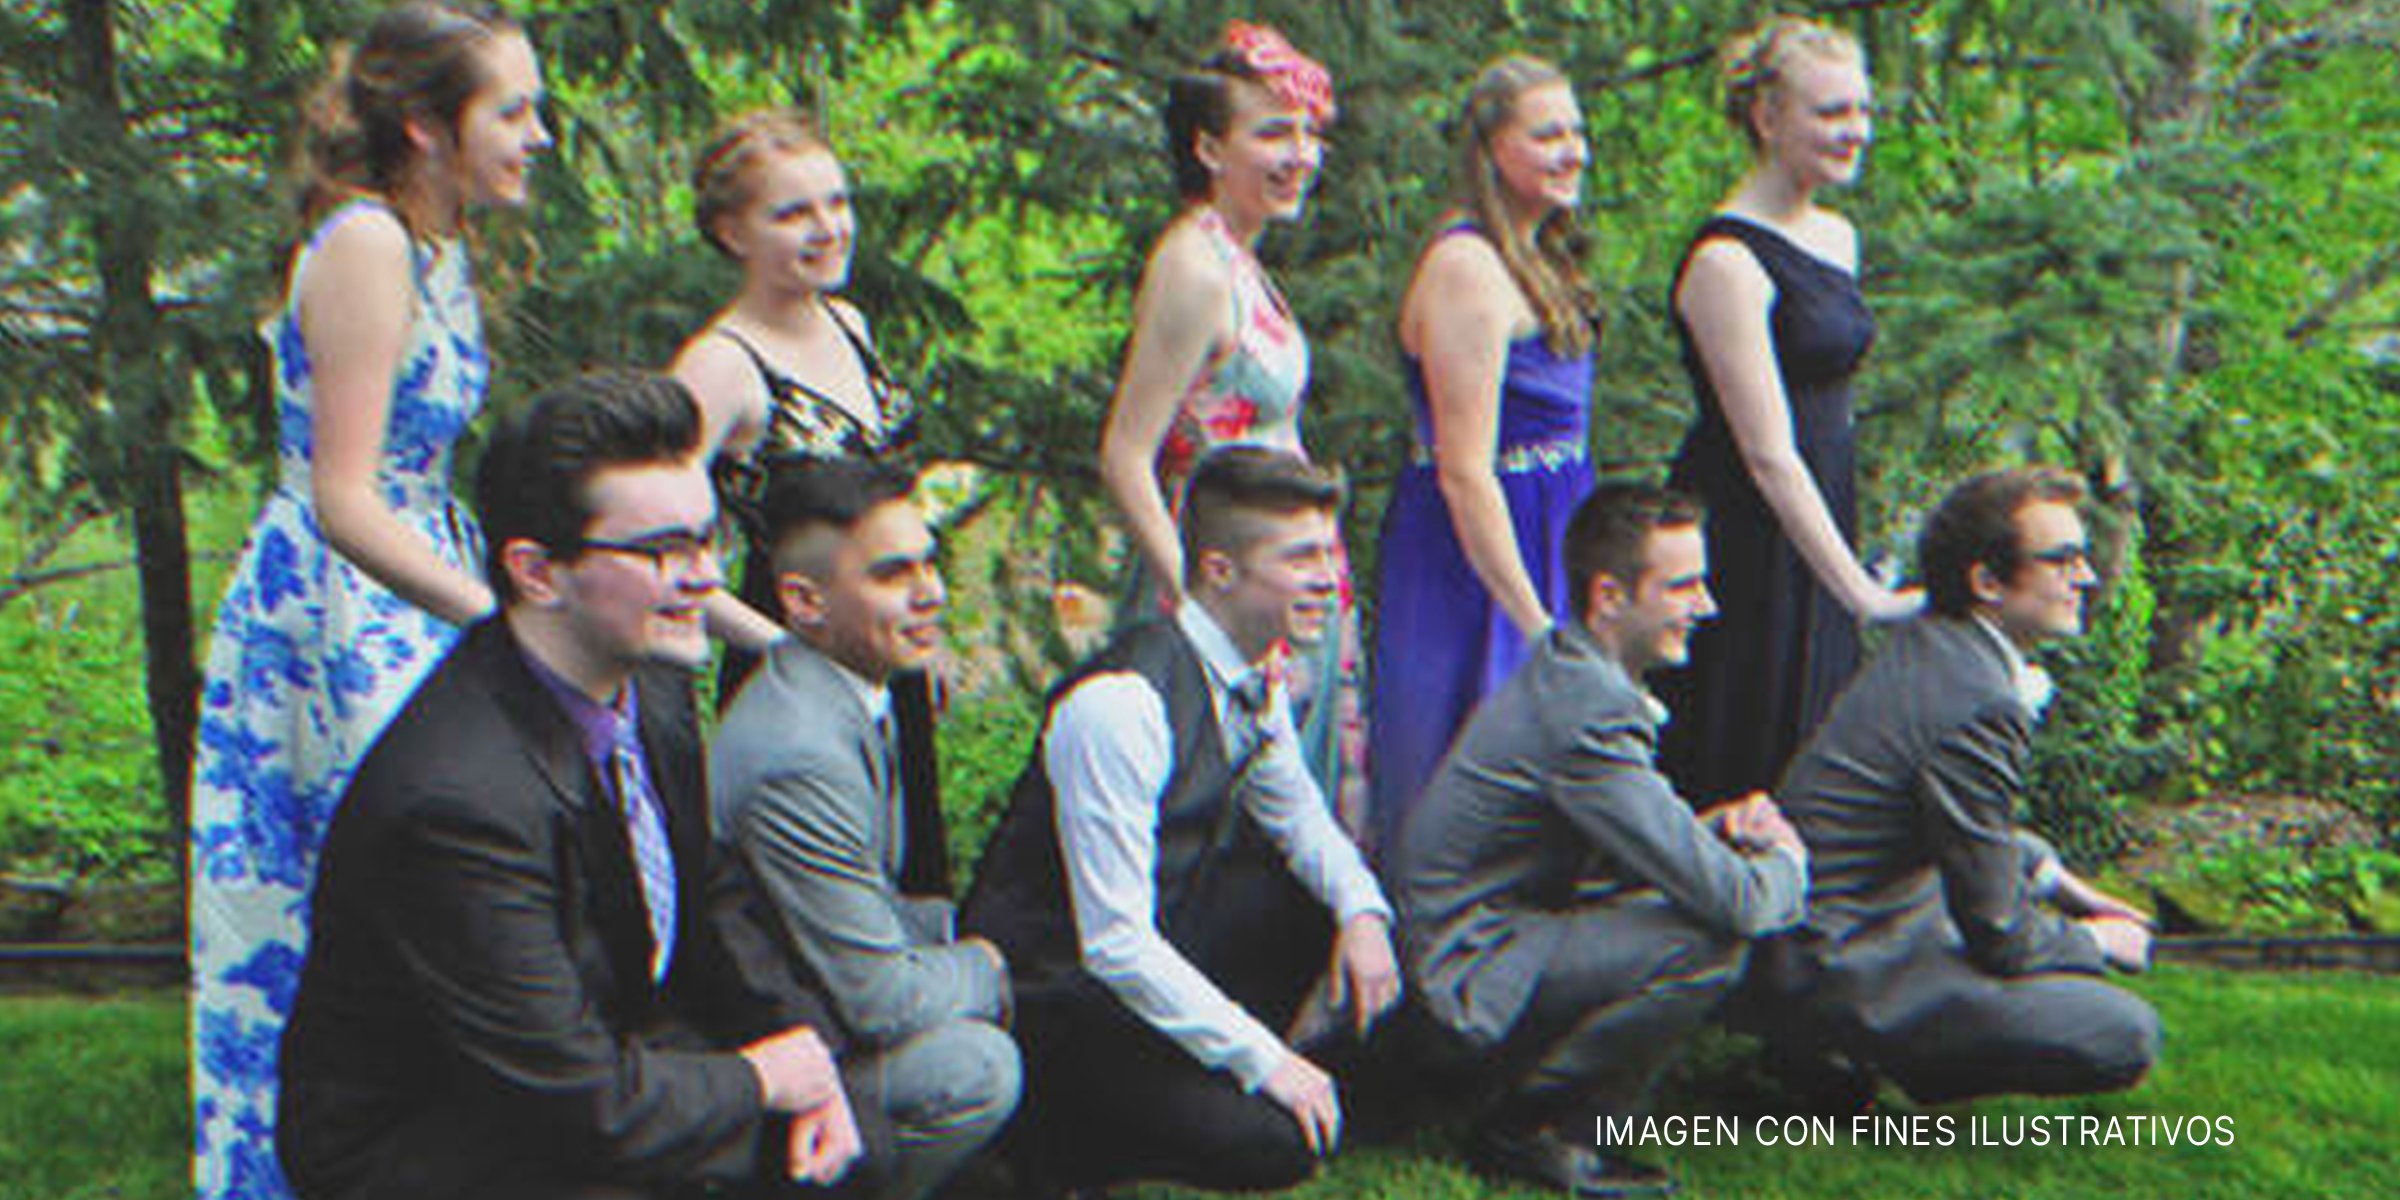 Adolescentes posando para una foto antes del baile de graduación | Foto: flickr.com/Seaners4real (CC BY-SA 2.0)